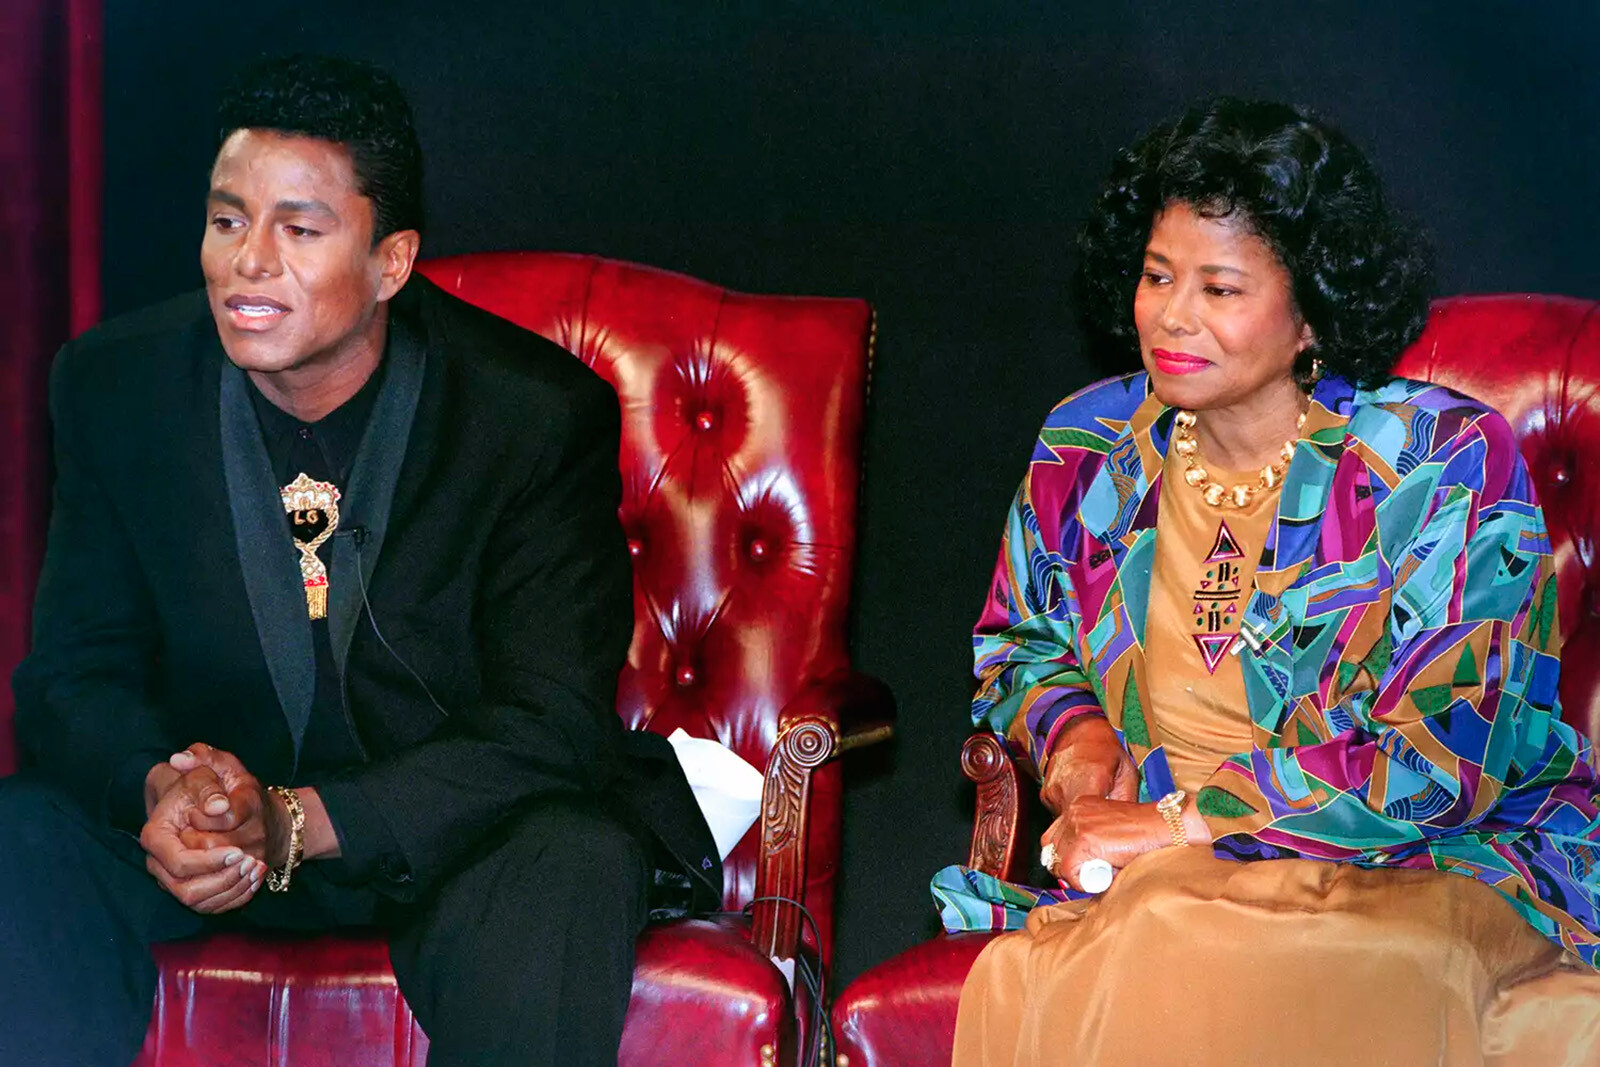 Джермейн Джексон и Кэтрин Джексон во время объявления о предстоящем специальном мероприятии по воссоединению семьи Джексонов &laquo;Jackson Family Honors&raquo;, 30 августа 1993 года